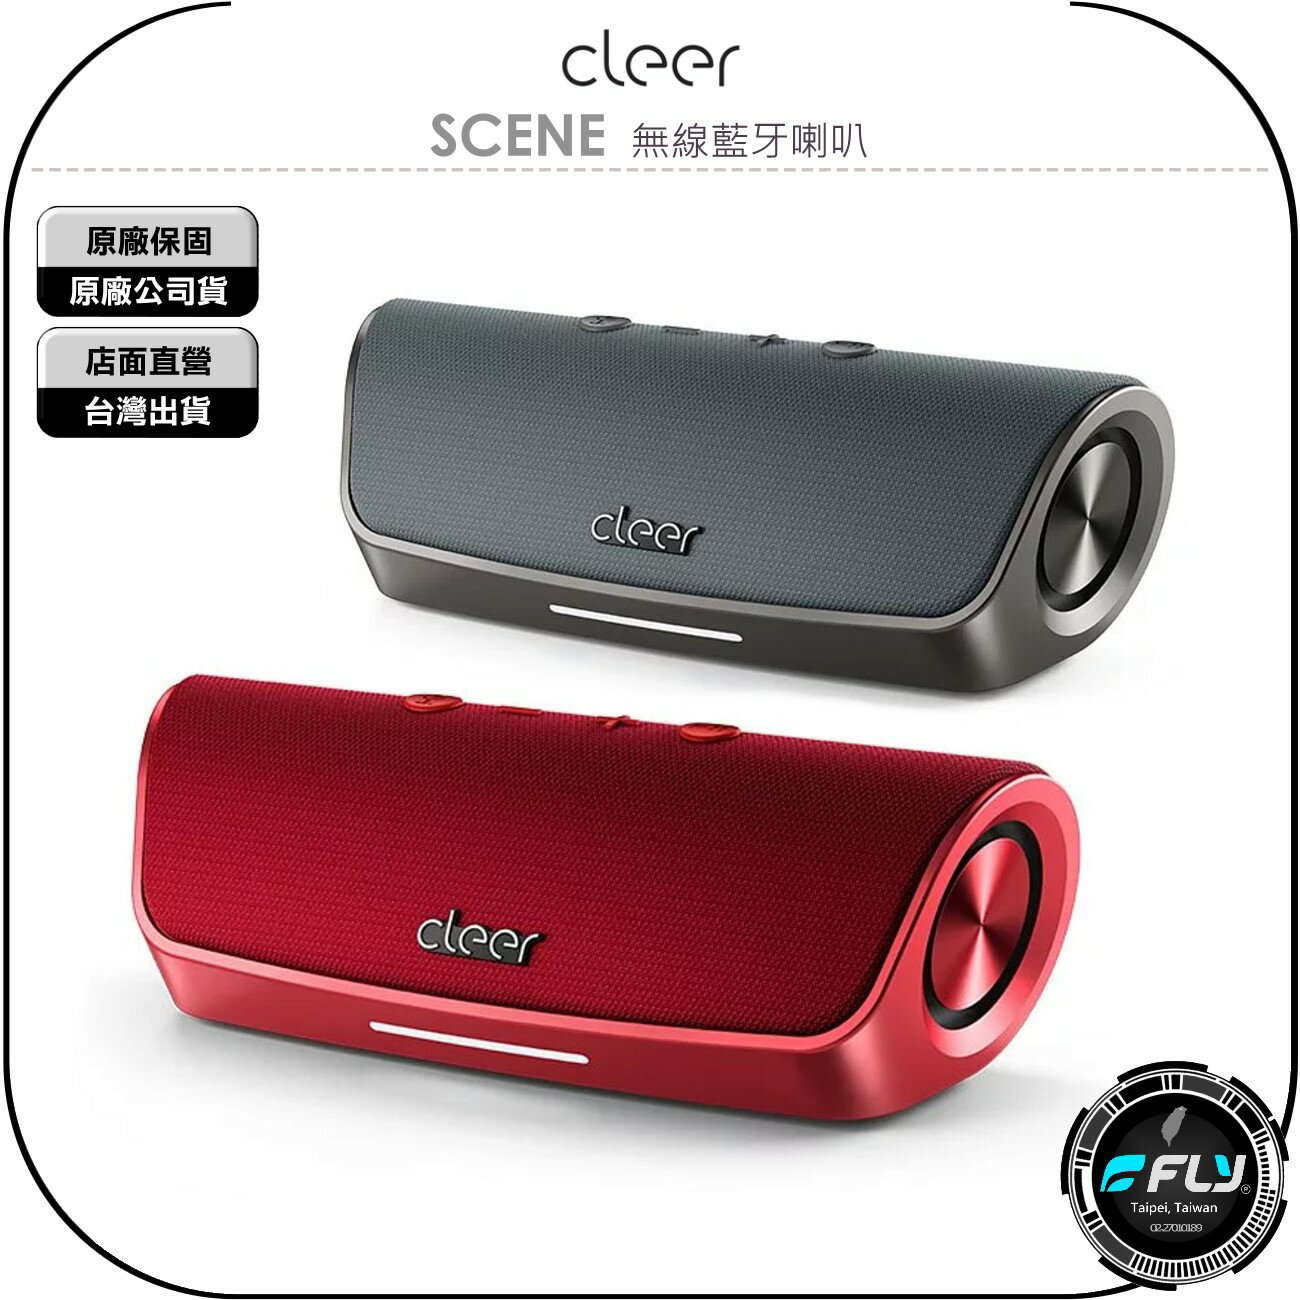 《飛翔無線3C》Cleer SCENE 無線藍牙喇叭◉公司貨◉藍芽音響◉醇厚低音◉專業防水◉快速充電